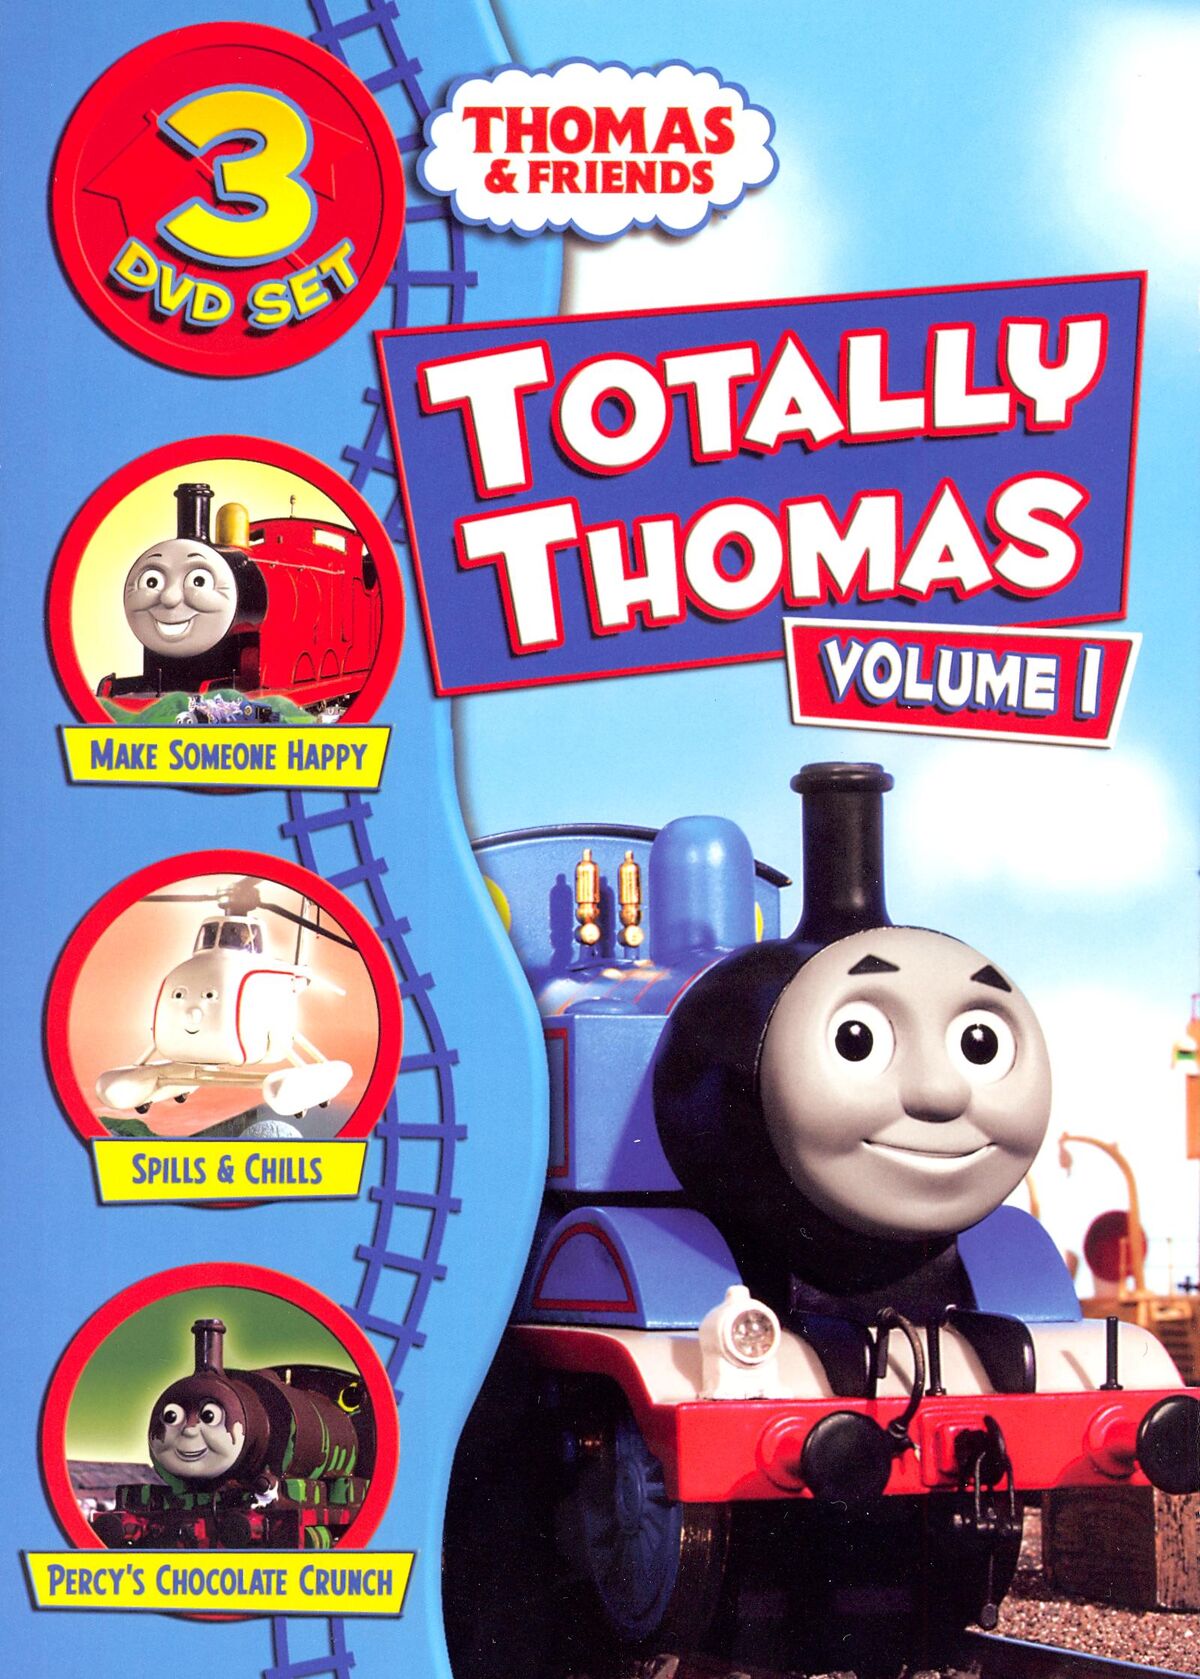 Totally Thomas Volume 1 | Thomas the Tank Engine Wiki | Fandom